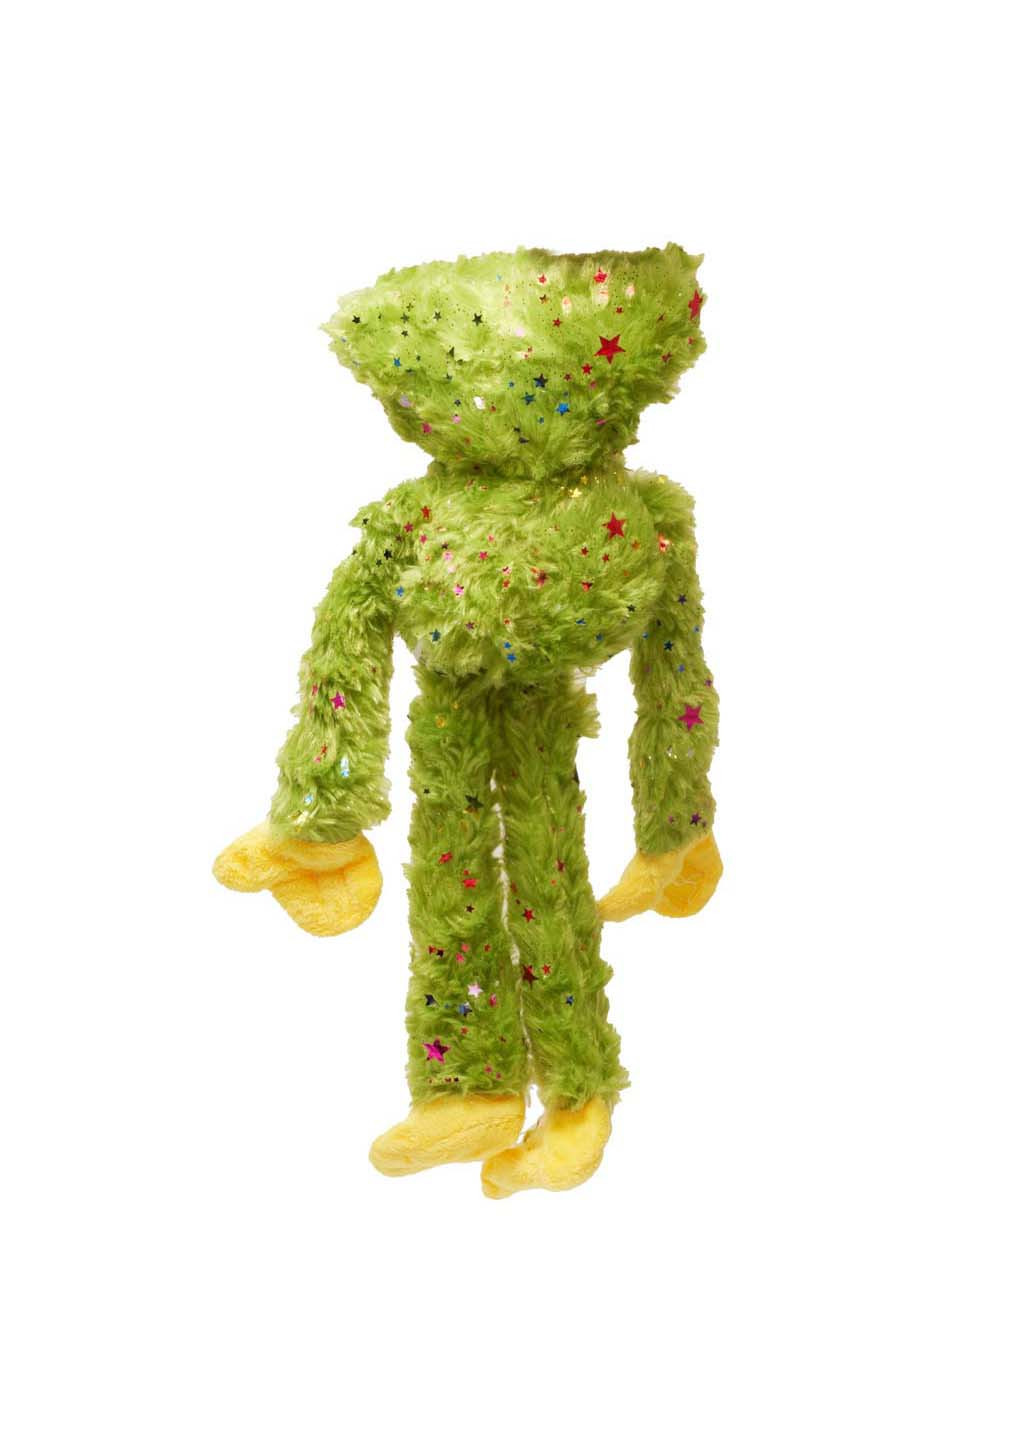 Мягкая игрушка обнимашка Хаги Ваги салатовая с блёстками и звездочками 40 см с липучками на лапках Unbranded (256544192)